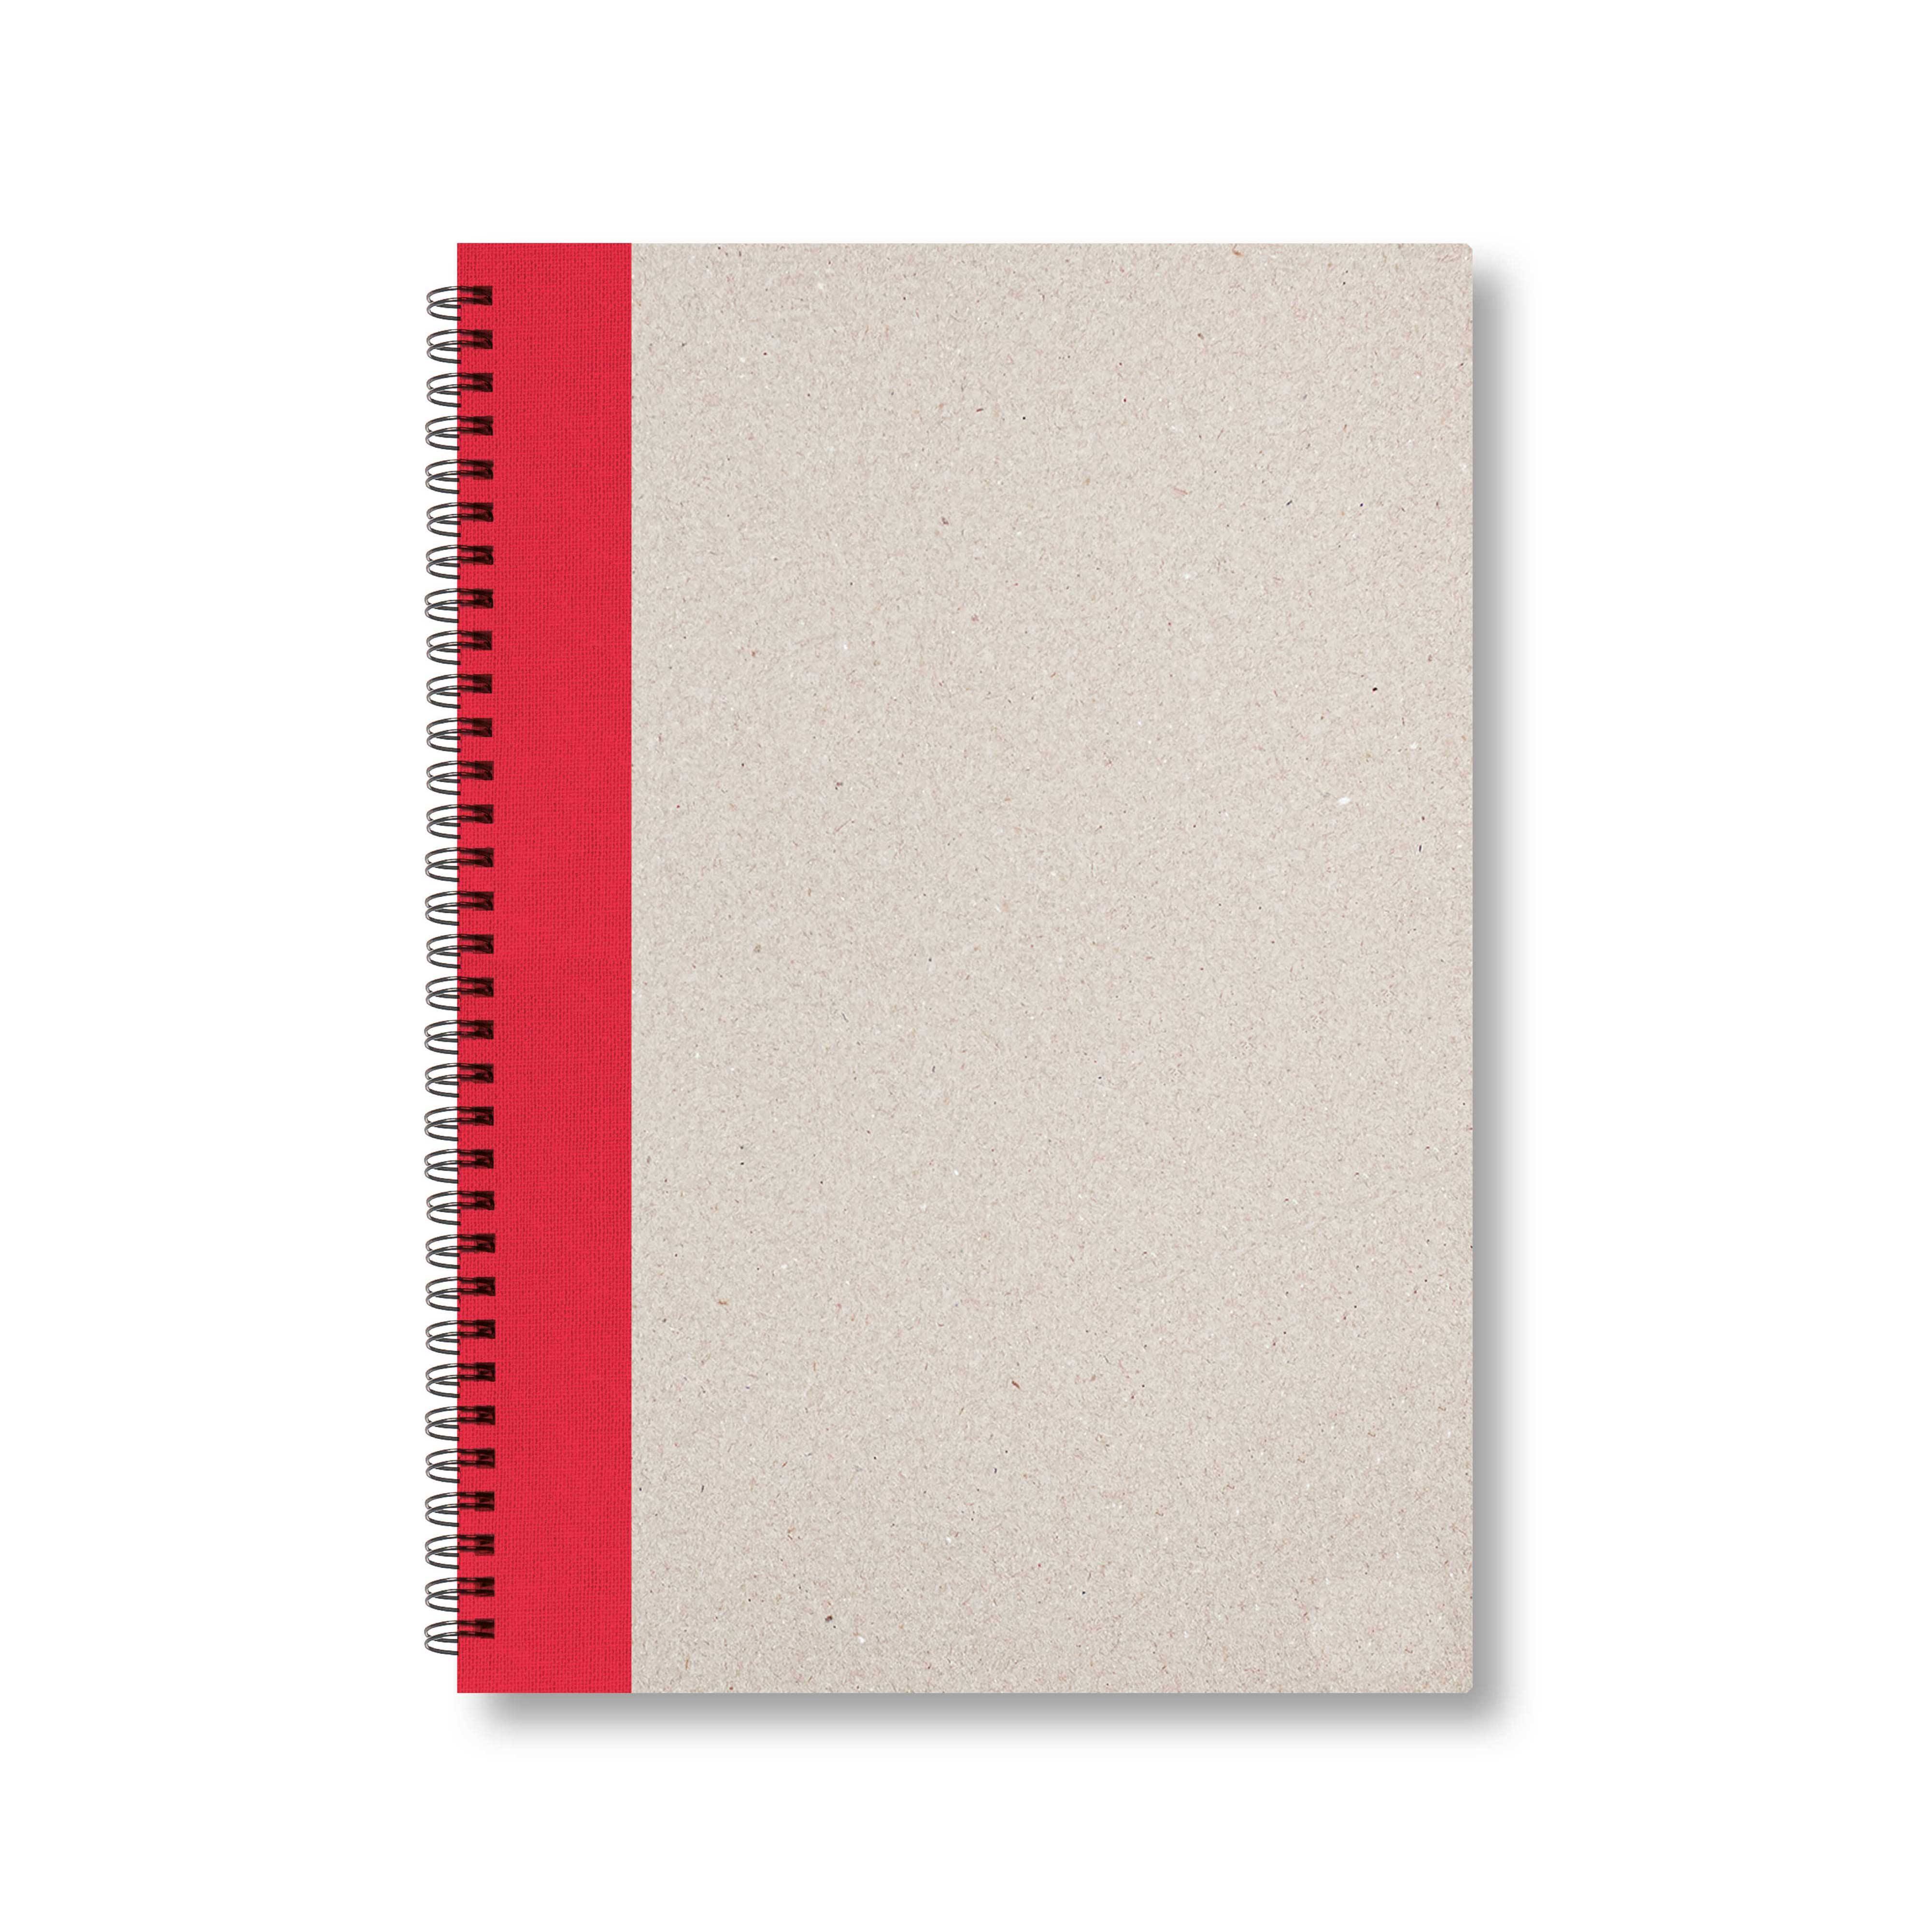 BOBO Zápisník, B5, linkovaný, červený, konfiguruj si obálku